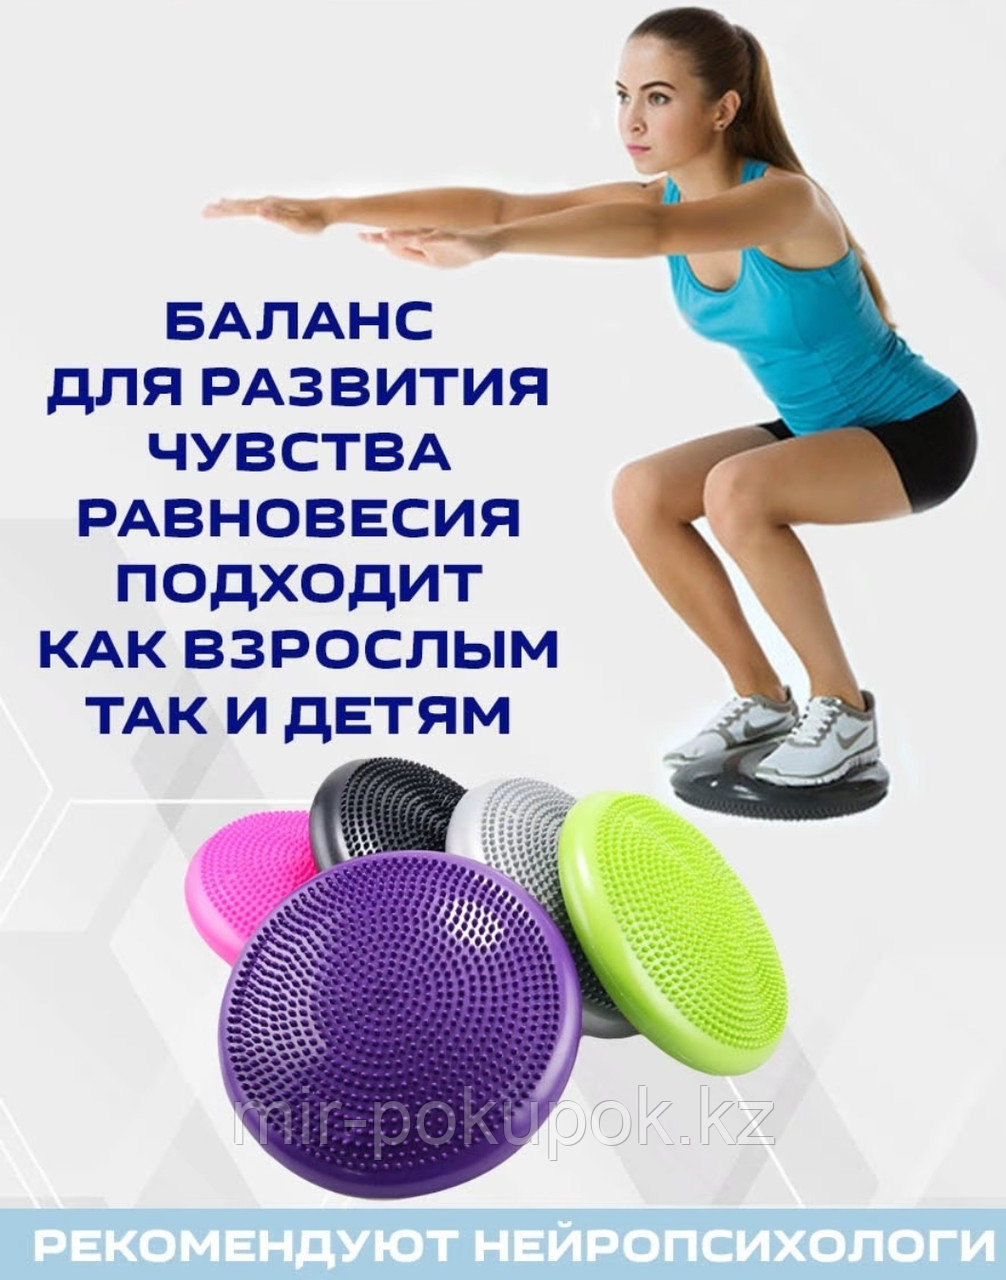 Надувной диск подушка для баланса (балансборд, резиновая балансировочная подушка, фитбол, балансировочный диск